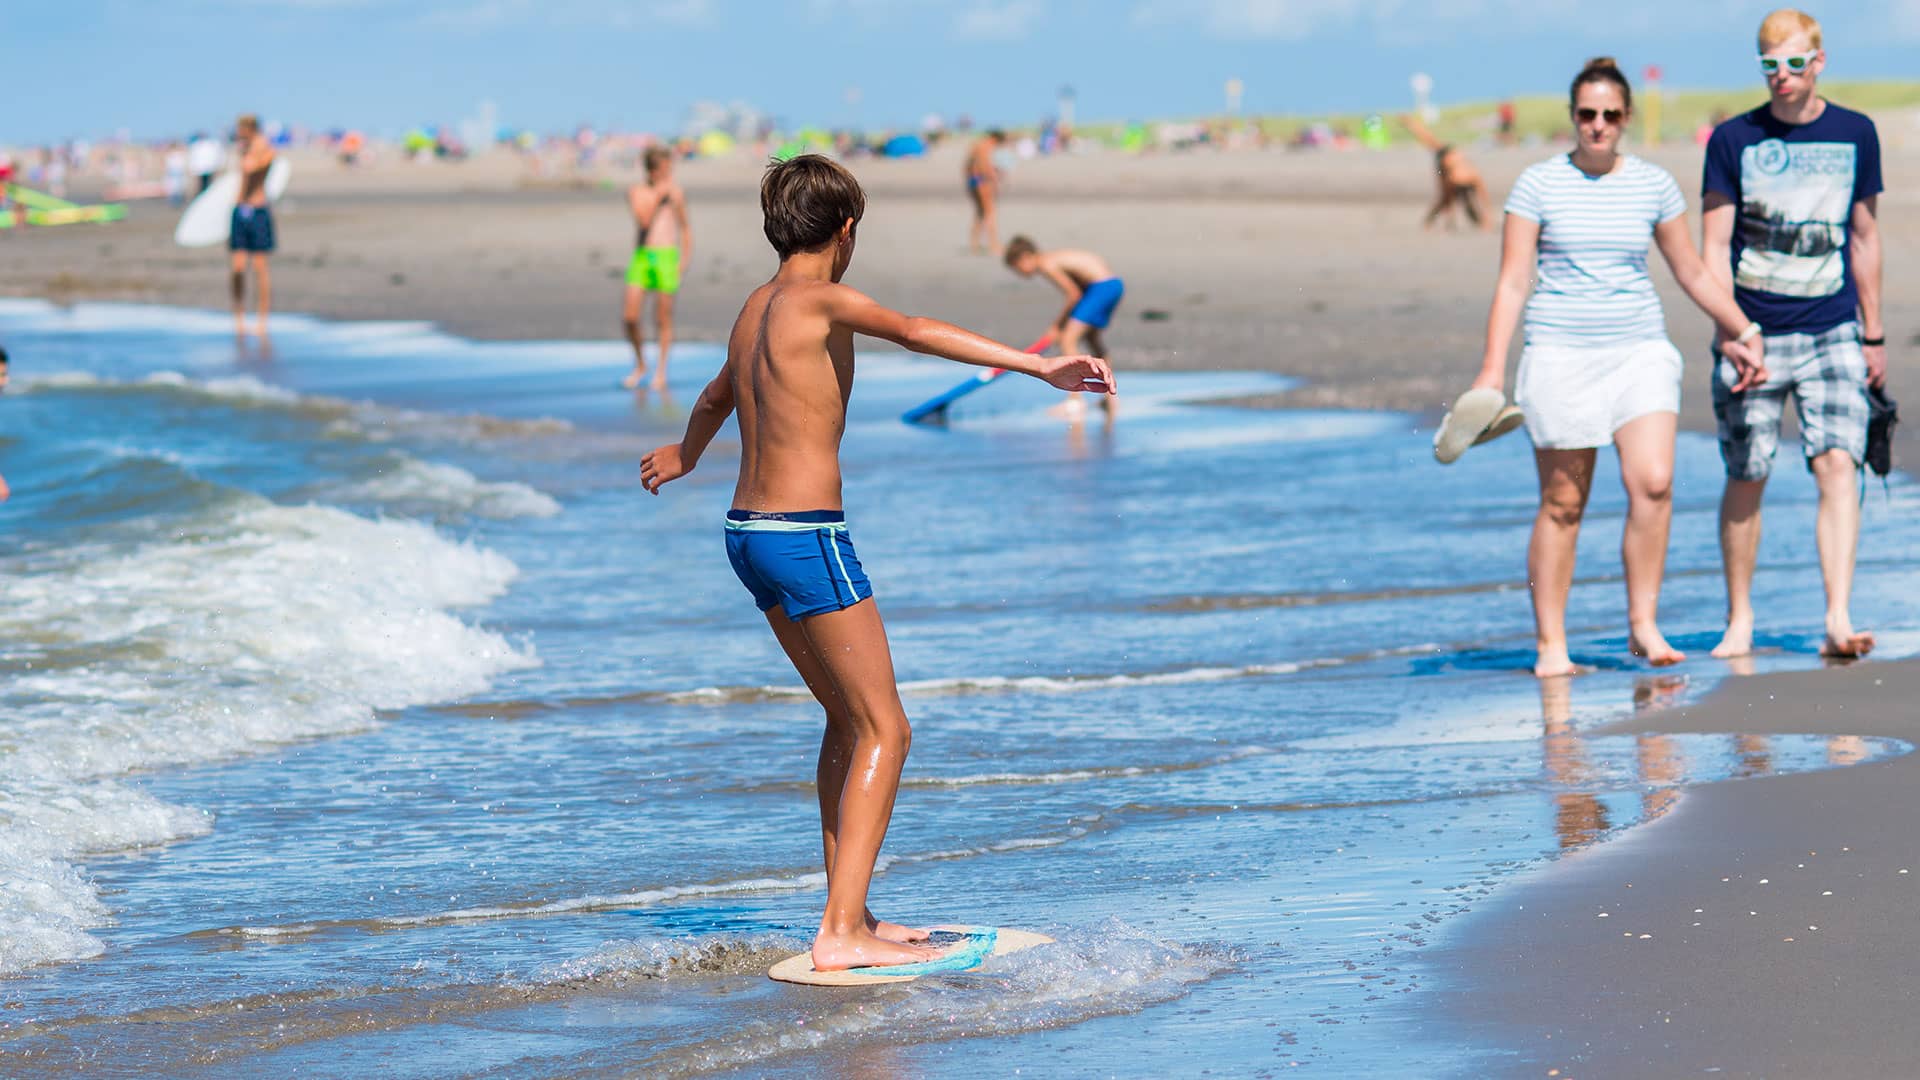 jongen met wakeboard in de vloedlijn op het strand in het westland